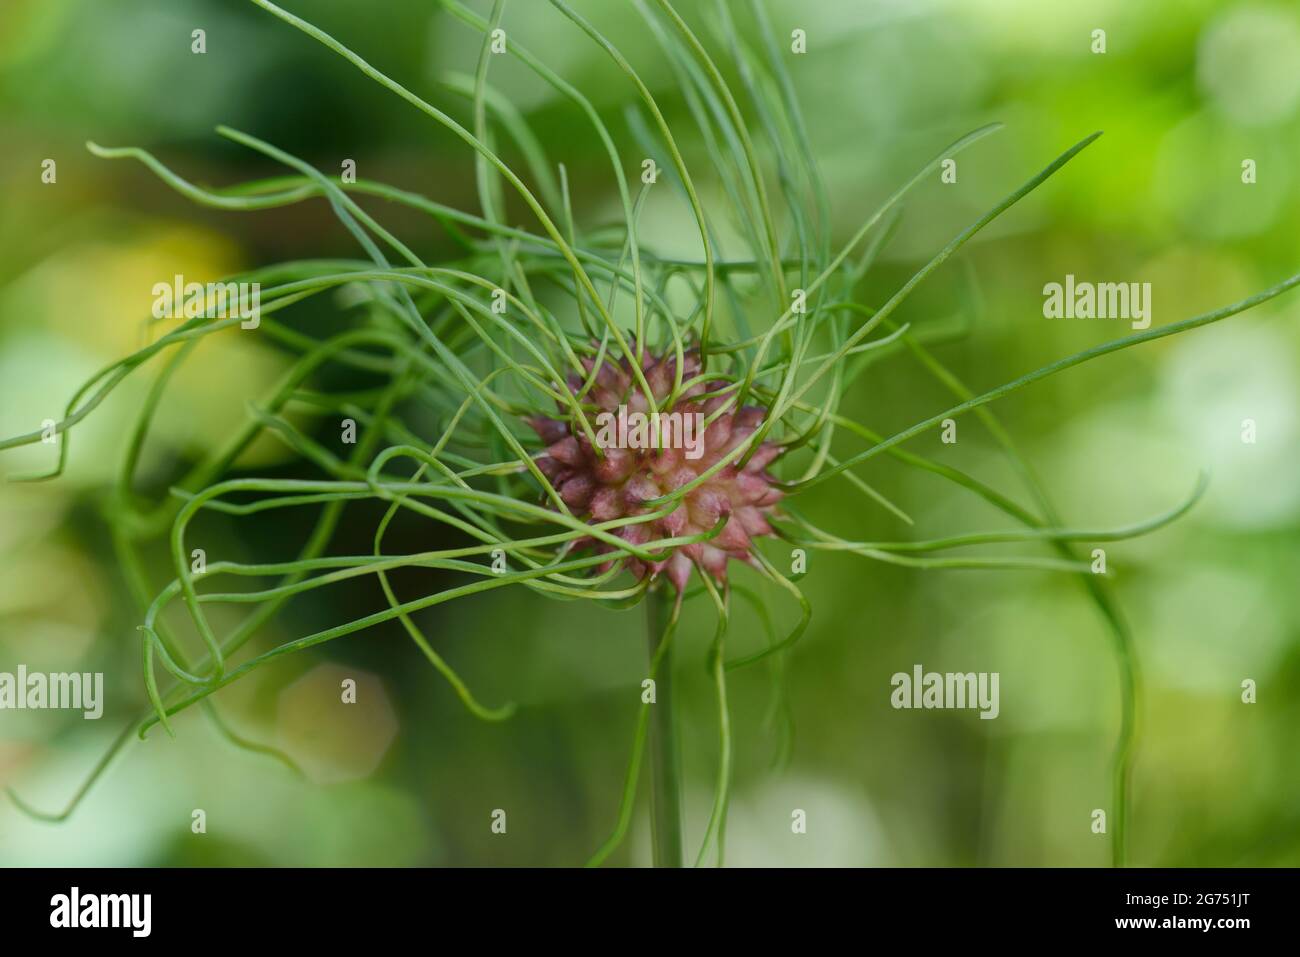 Allium vineale. Wild garlic bulblet. Bulbil, bulbel, England, UK Stock Photo